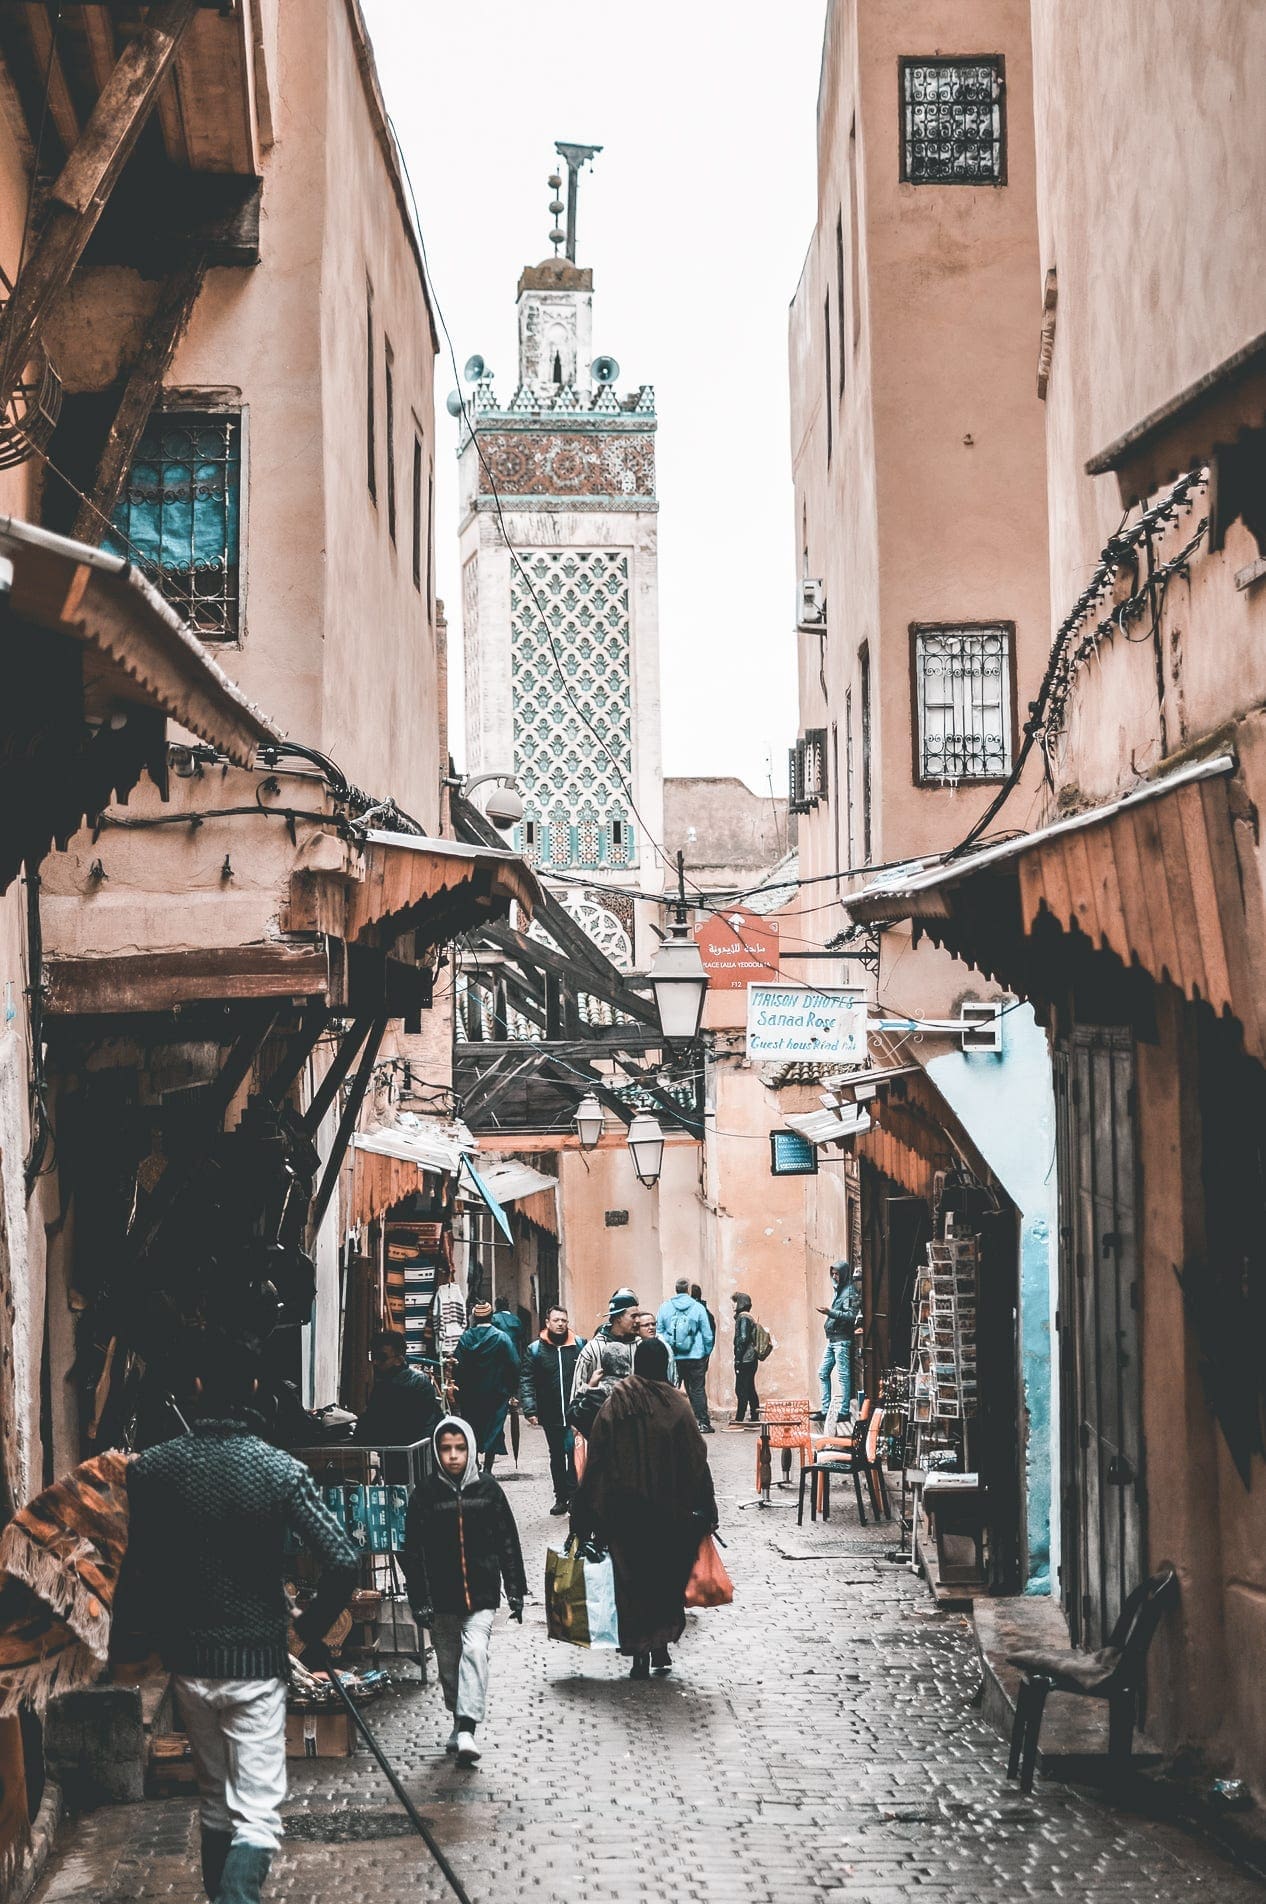 mooiste plekken marokko, Dit zijn de mooiste plekken van Marokko